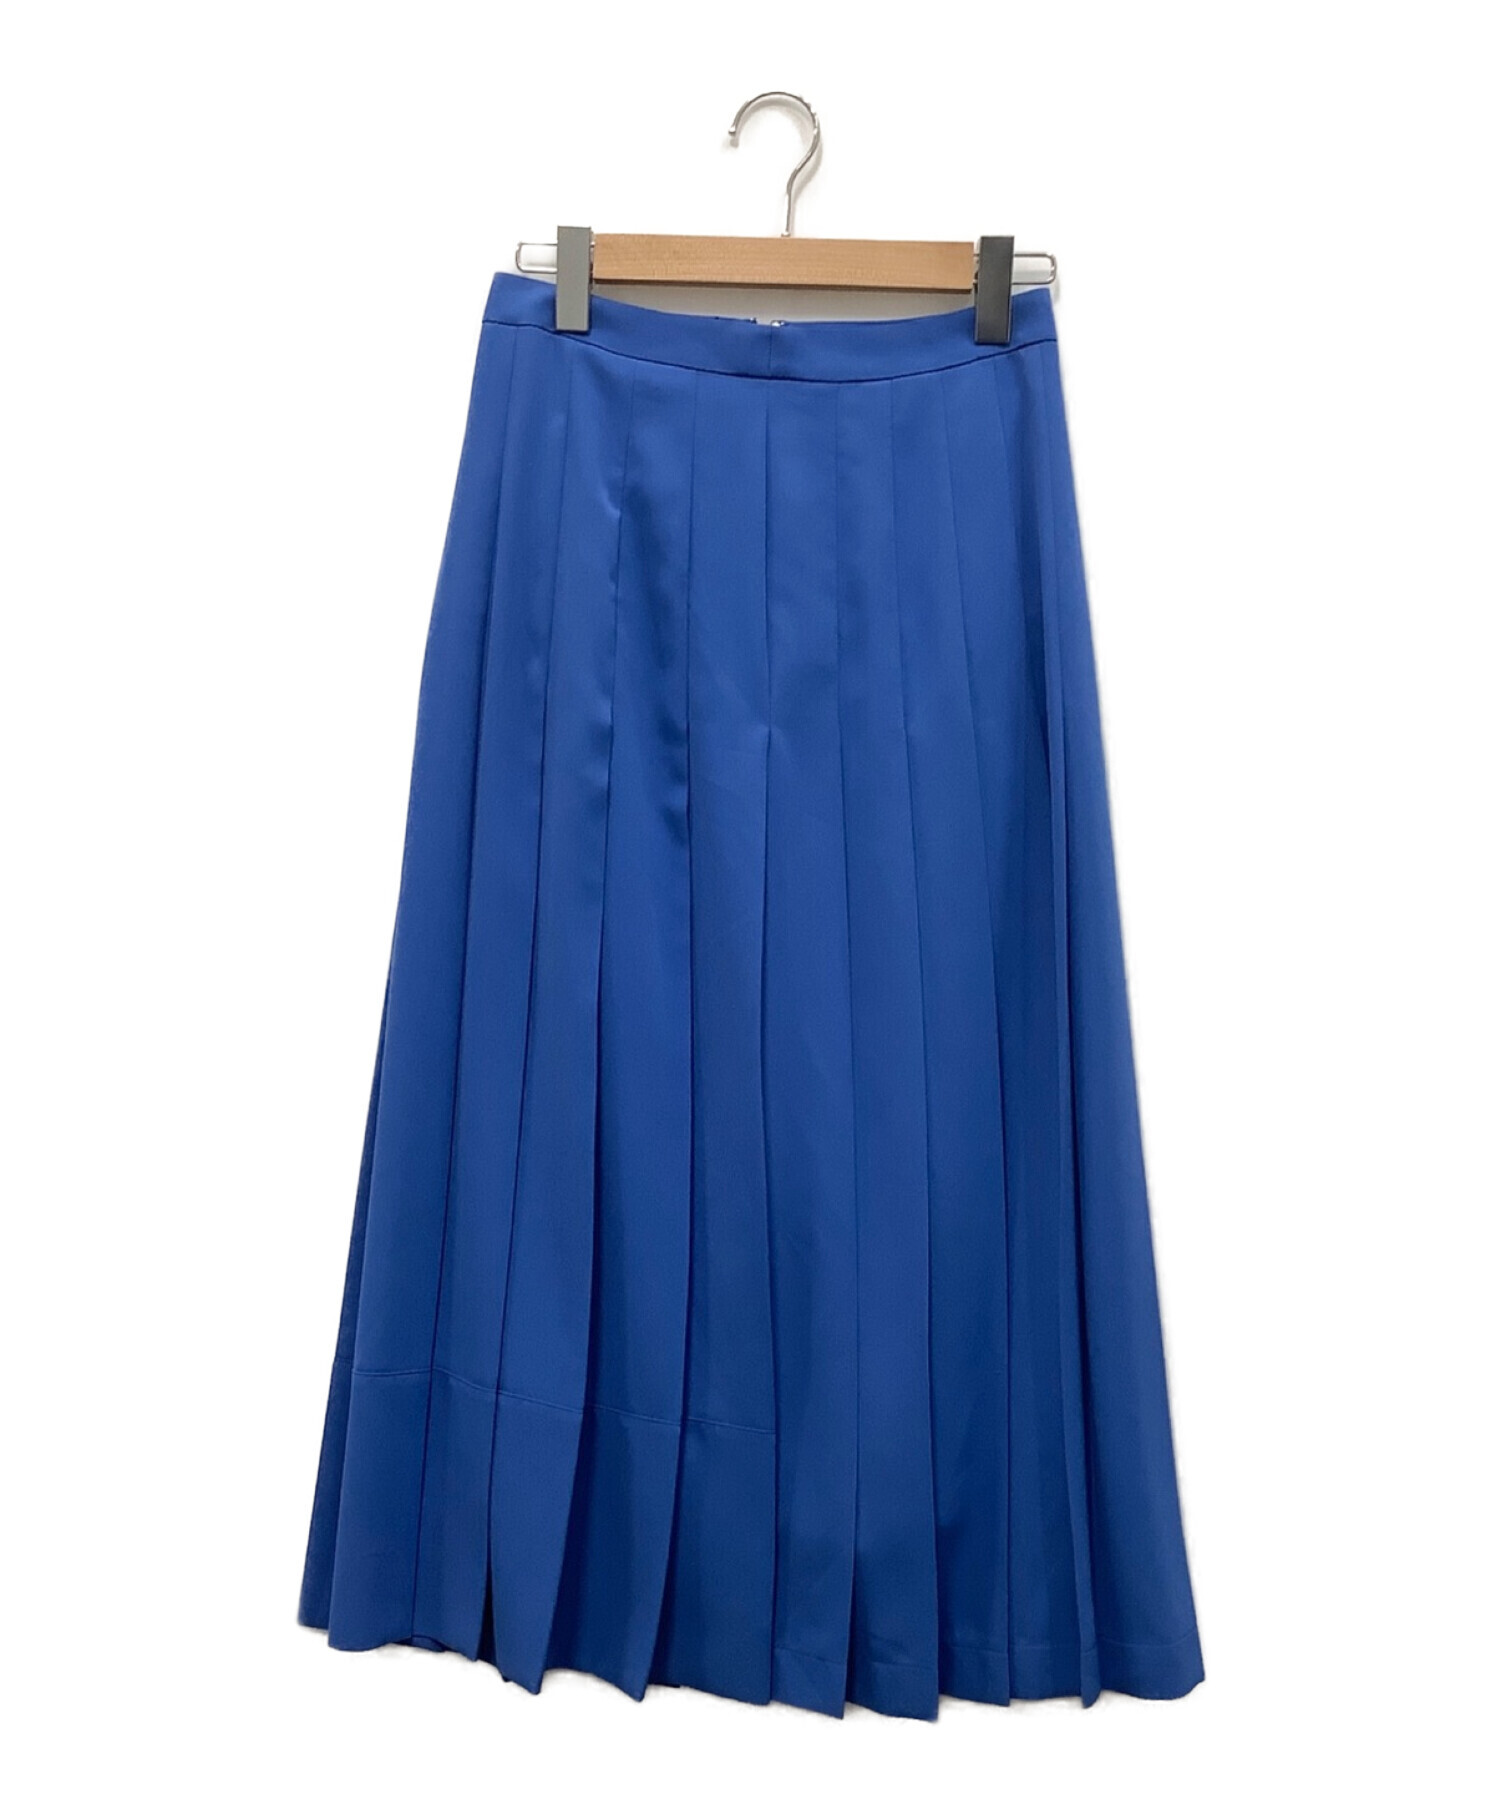 allureville (アルアバイル) プリーツスカート ブルー サイズ:2 未使用品